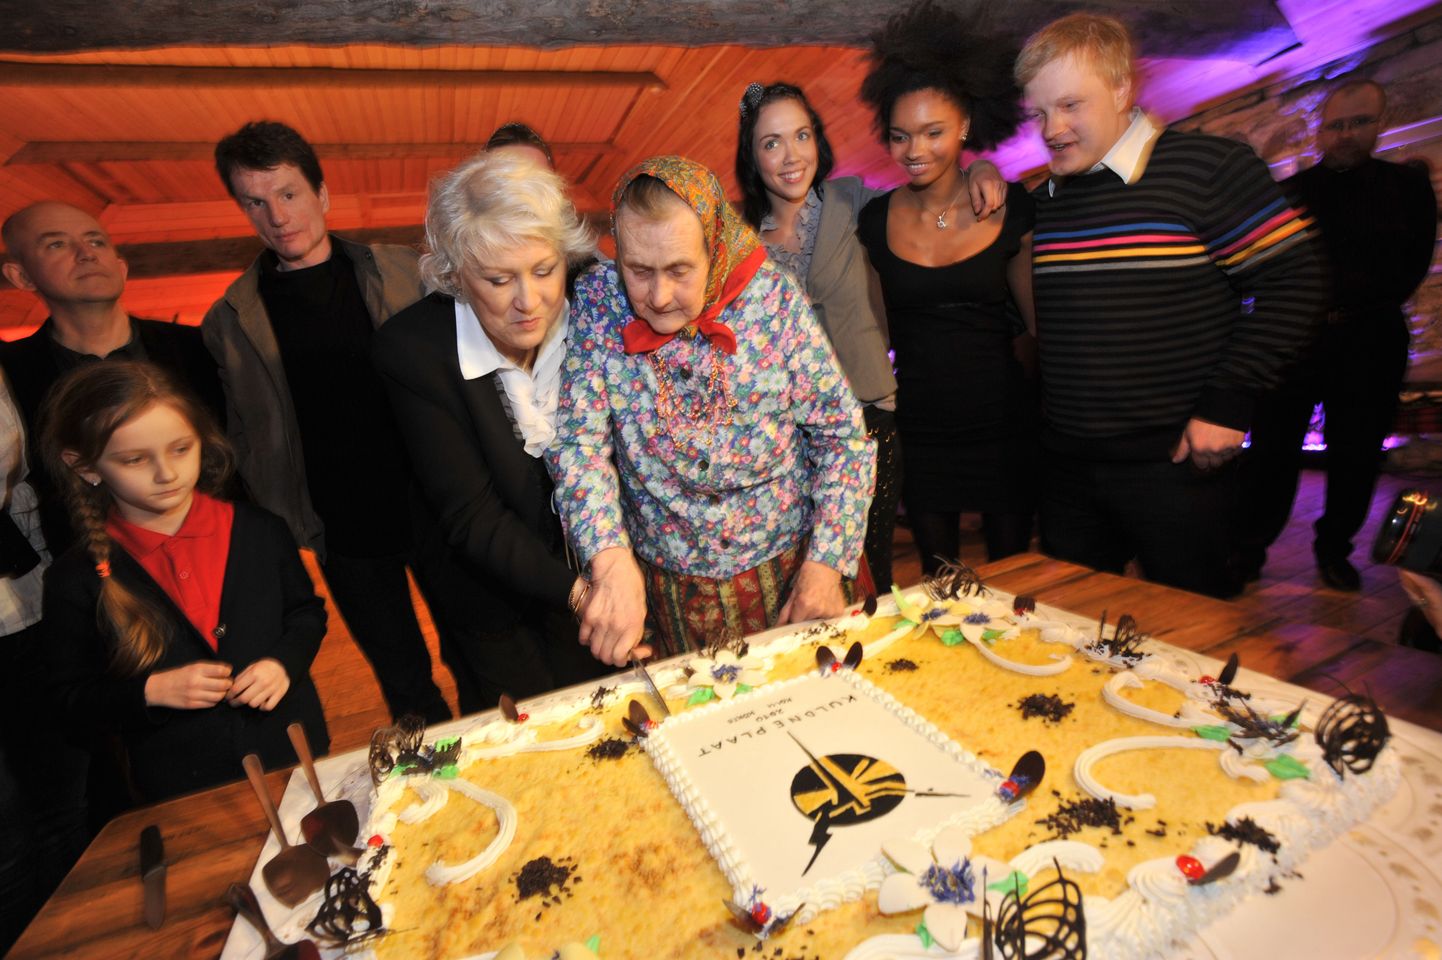 Eesti popmuusikasse panustamise eest auhinnatud Heidy Tamme ja aasta naisartist Kihnu Virve torti lõikamas.